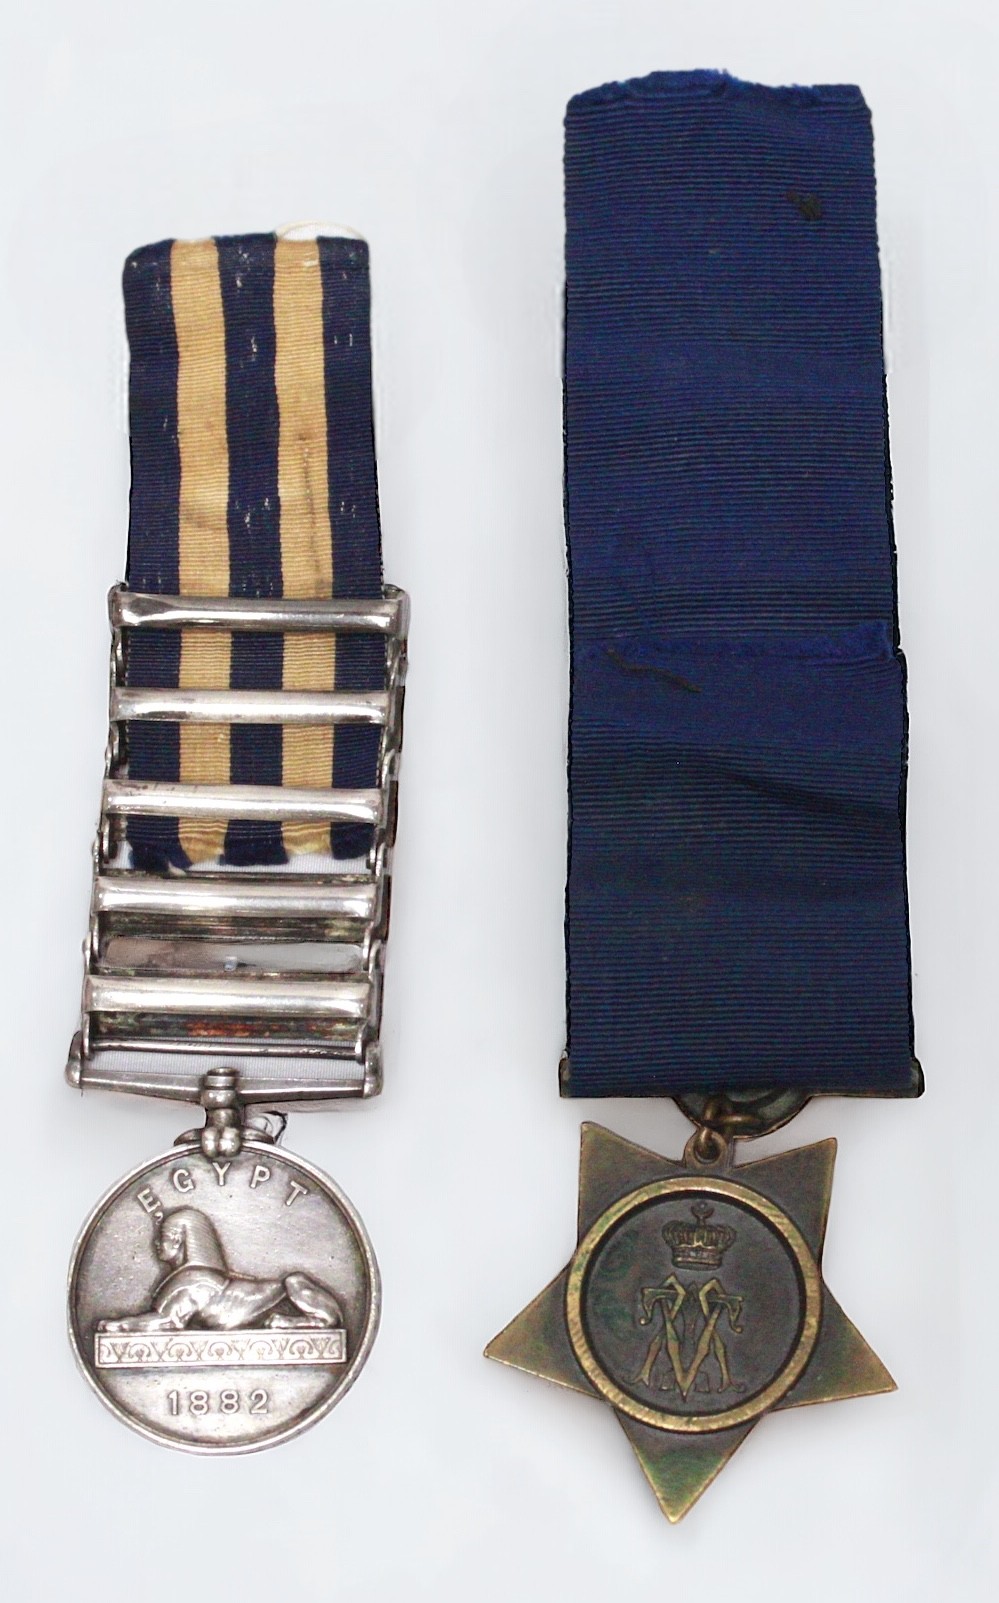 A Queen Victoria Egypt 1882 Medal with five Clasps for TEL-EL-KEBIR, SUAKIN 1884, EL-TEB-TAMAAI, THE - Bild 2 aus 4